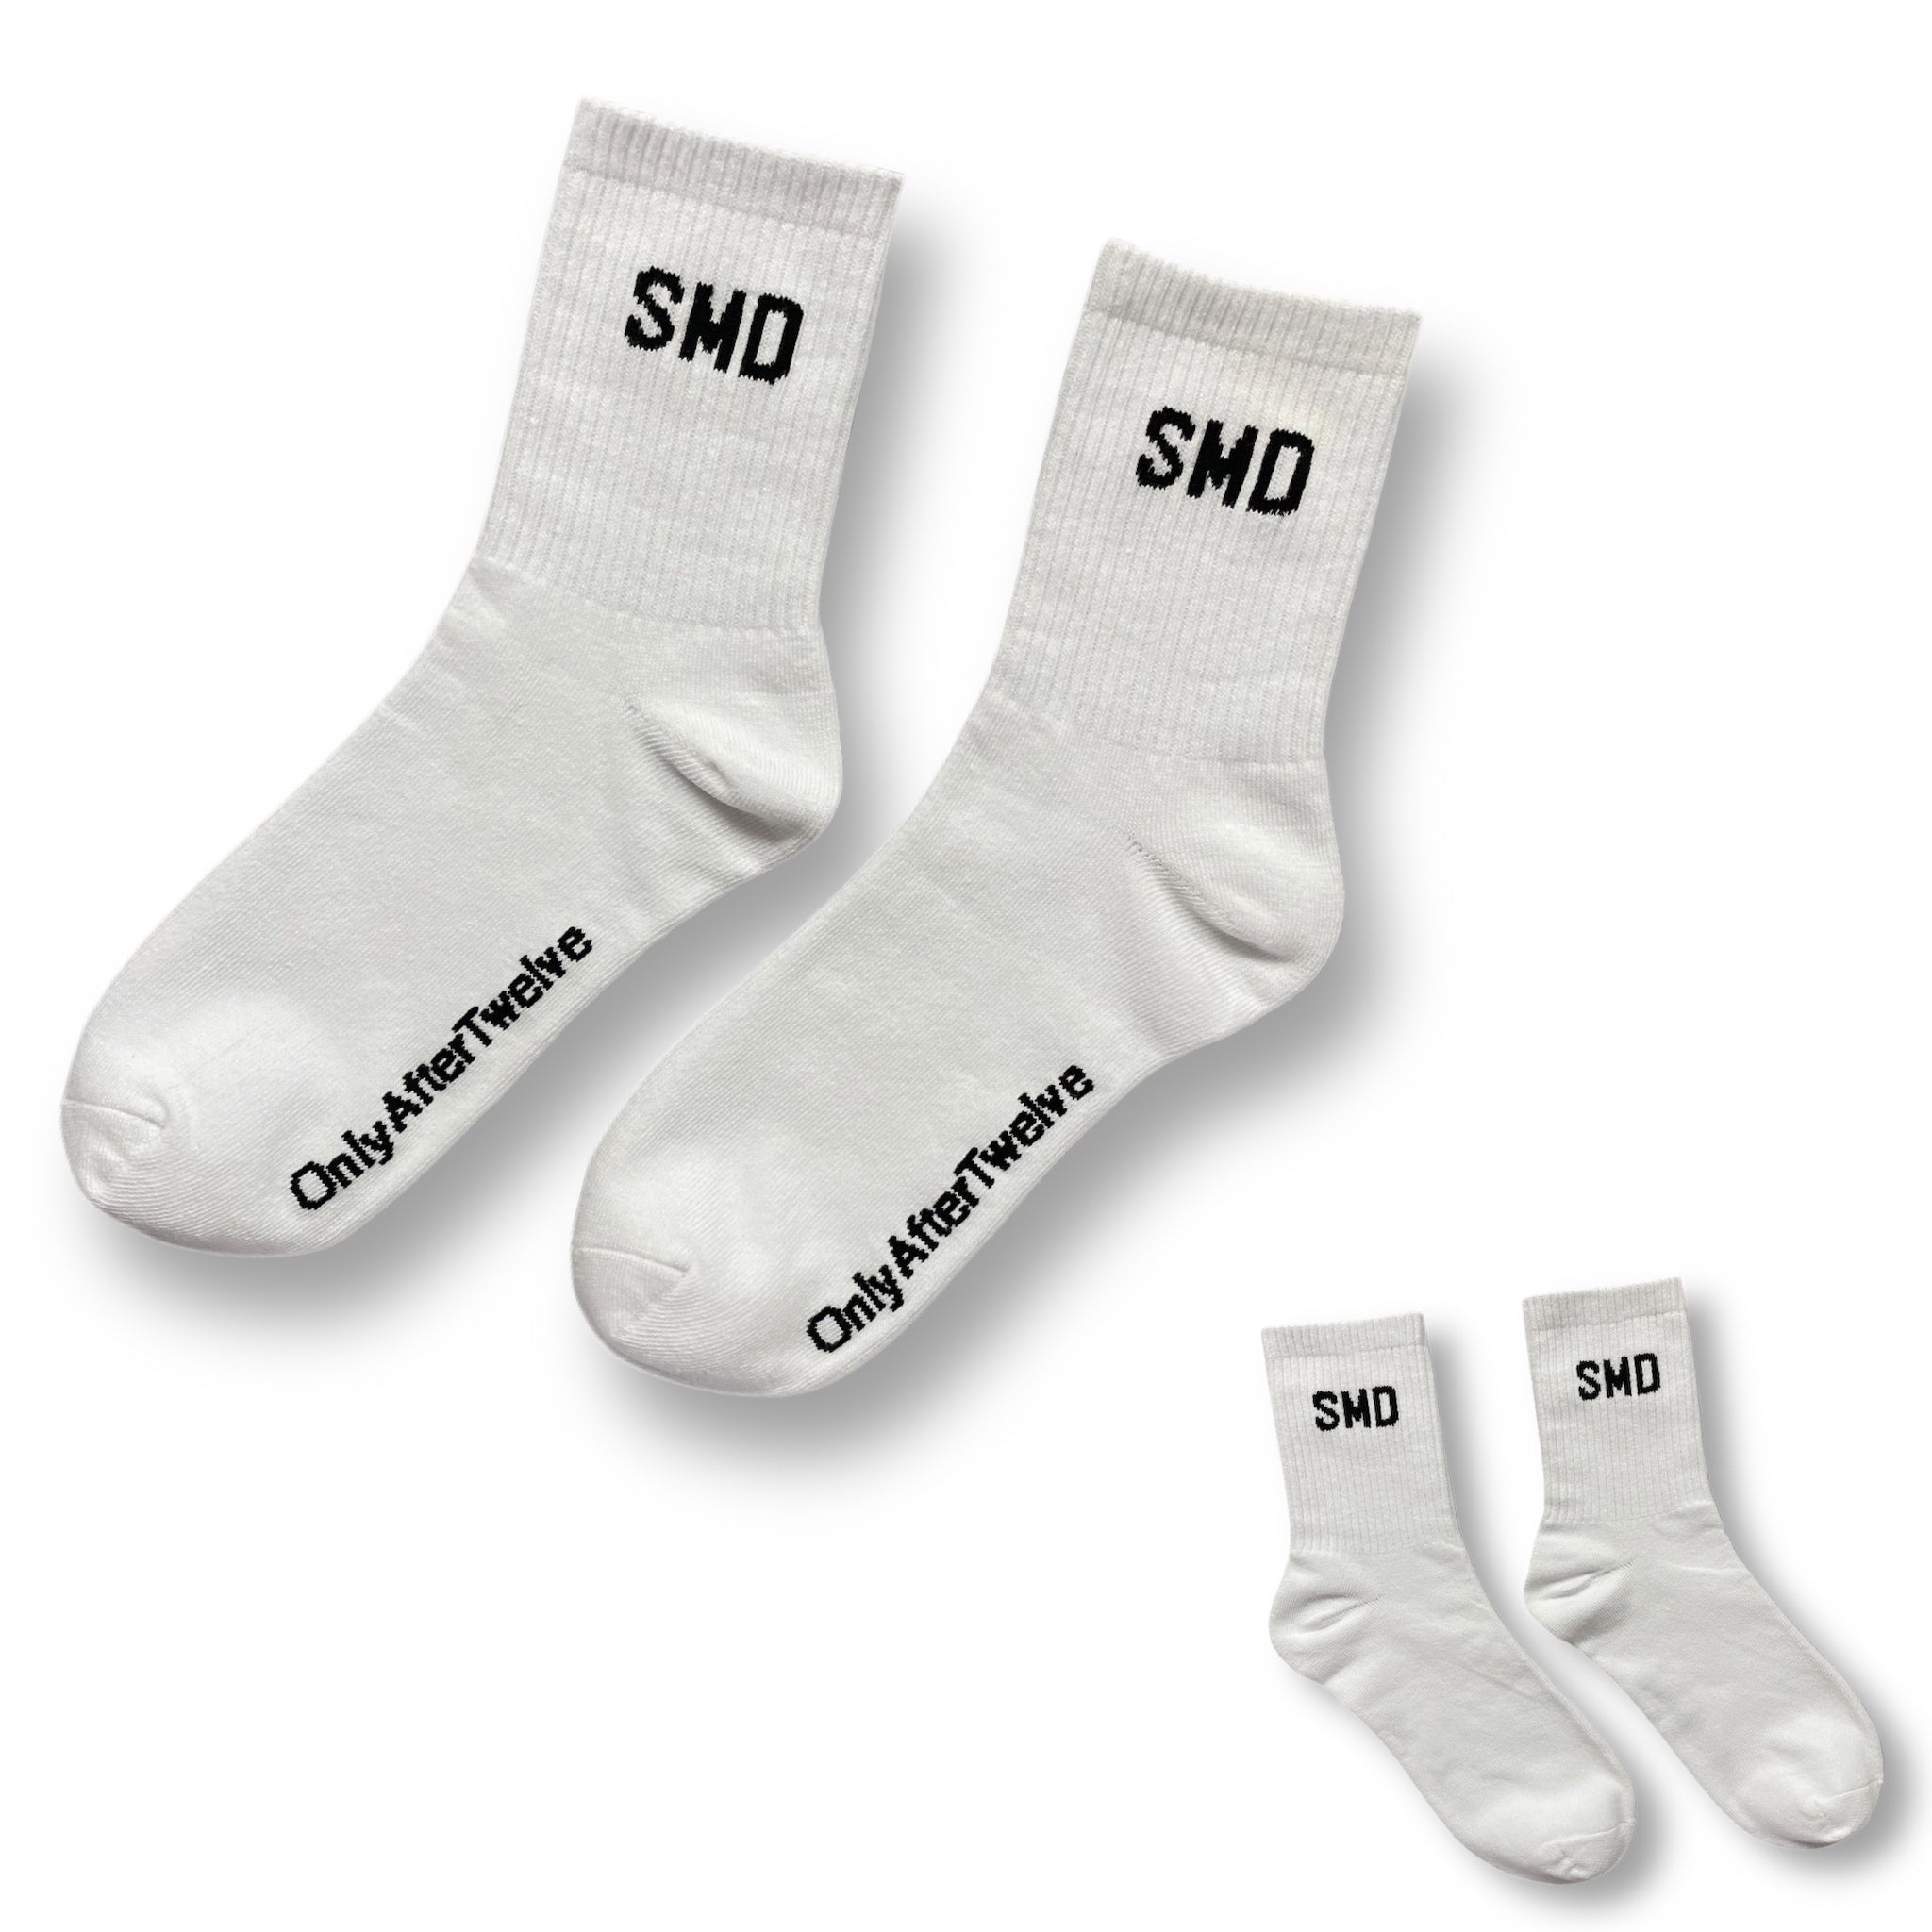 “SMD” Socks